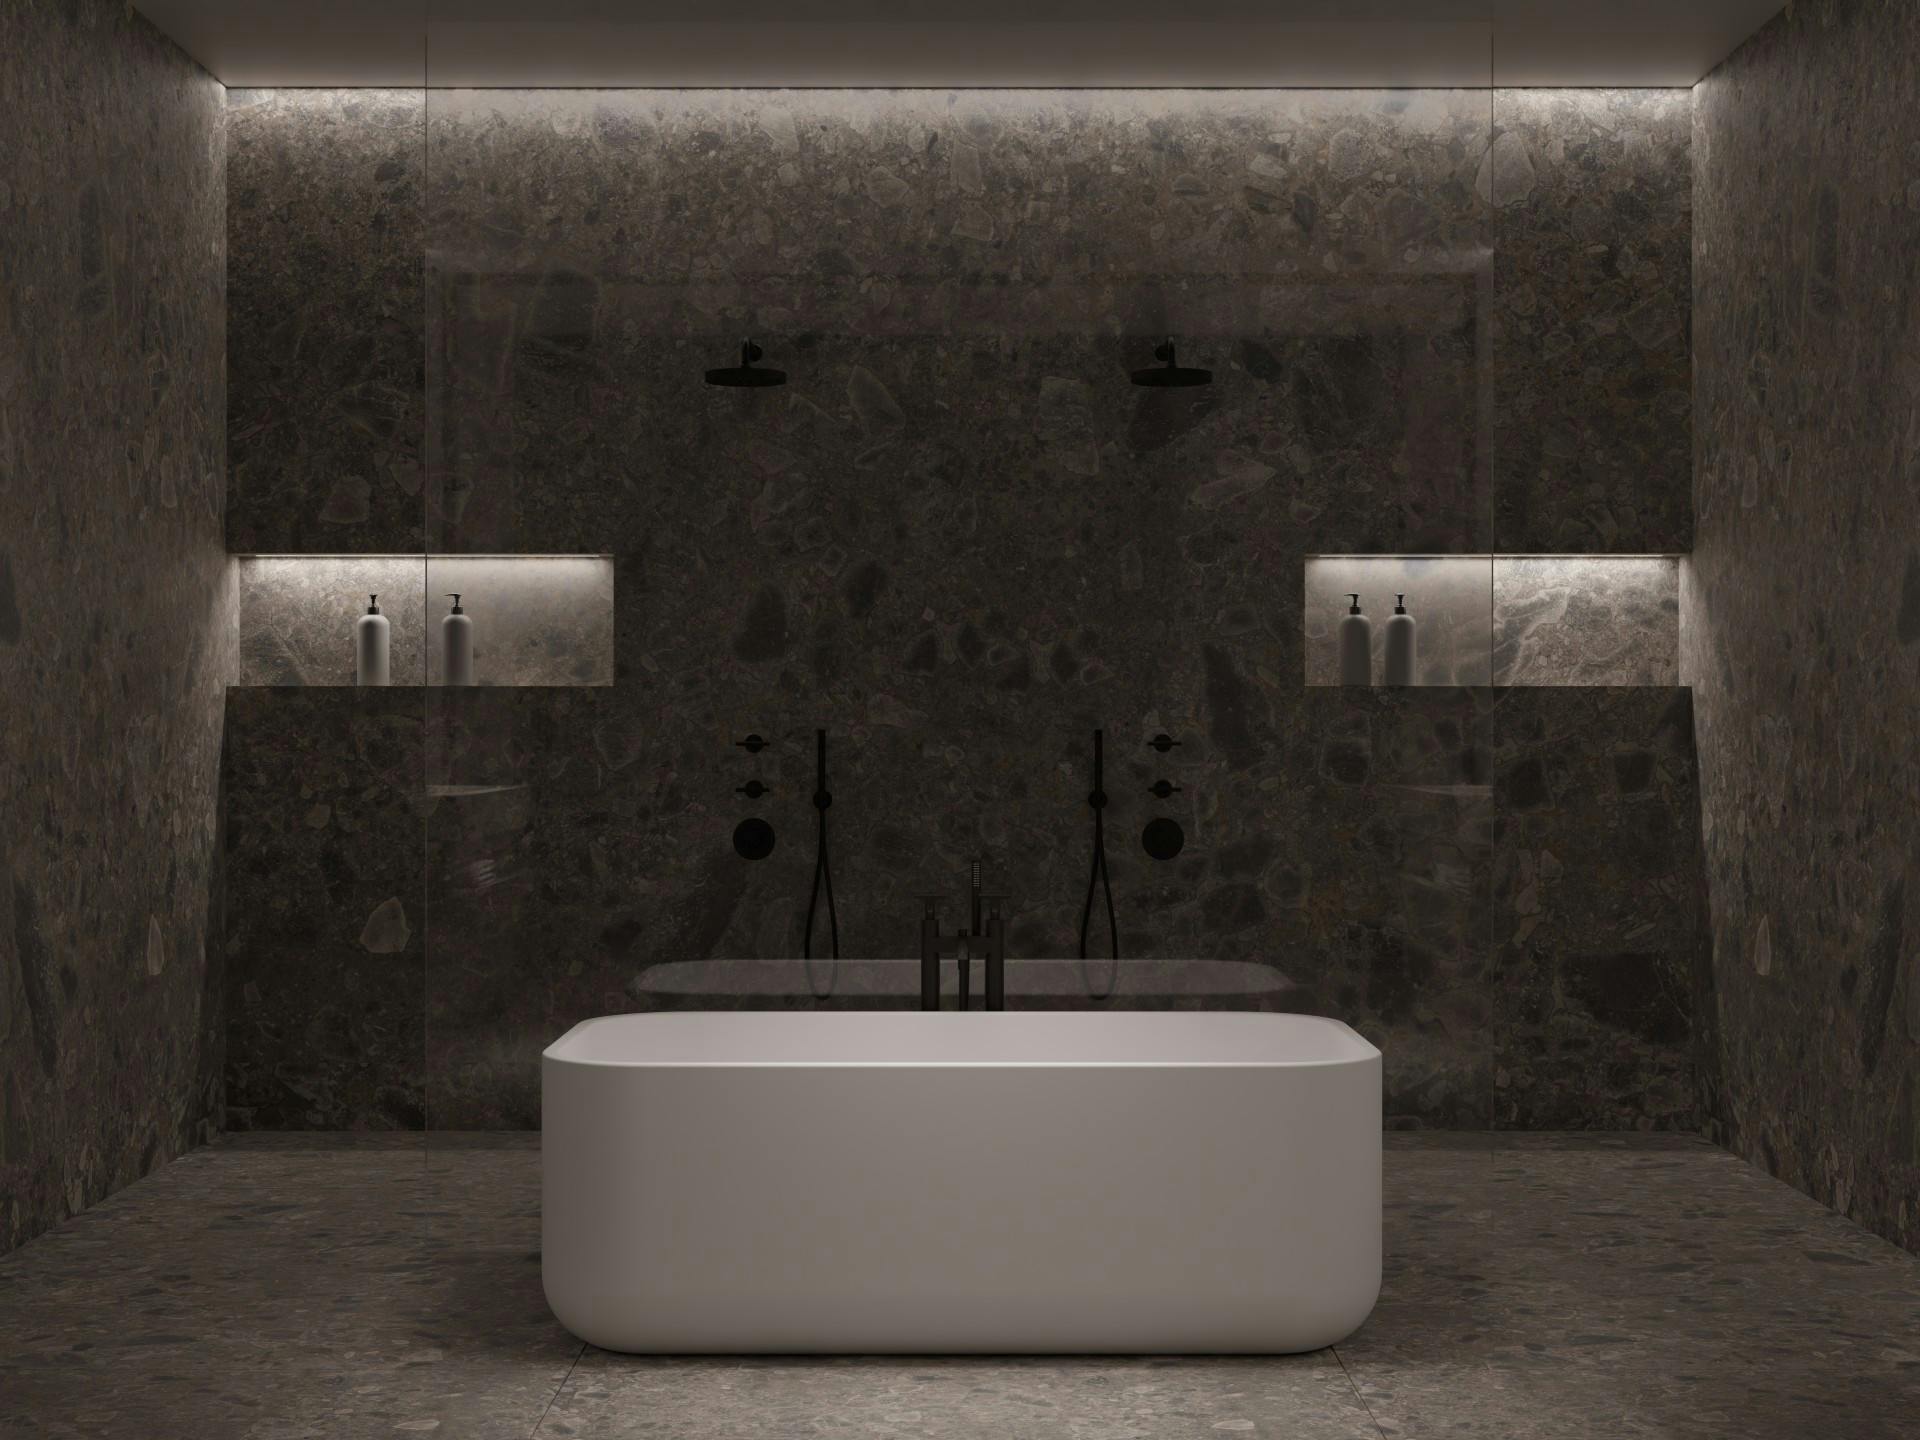 Numero immagine 35 della sezione corrente di The Cave: a bathroom designed by Colin Seah that pays homage to primitive rituals di Cosentino Italia